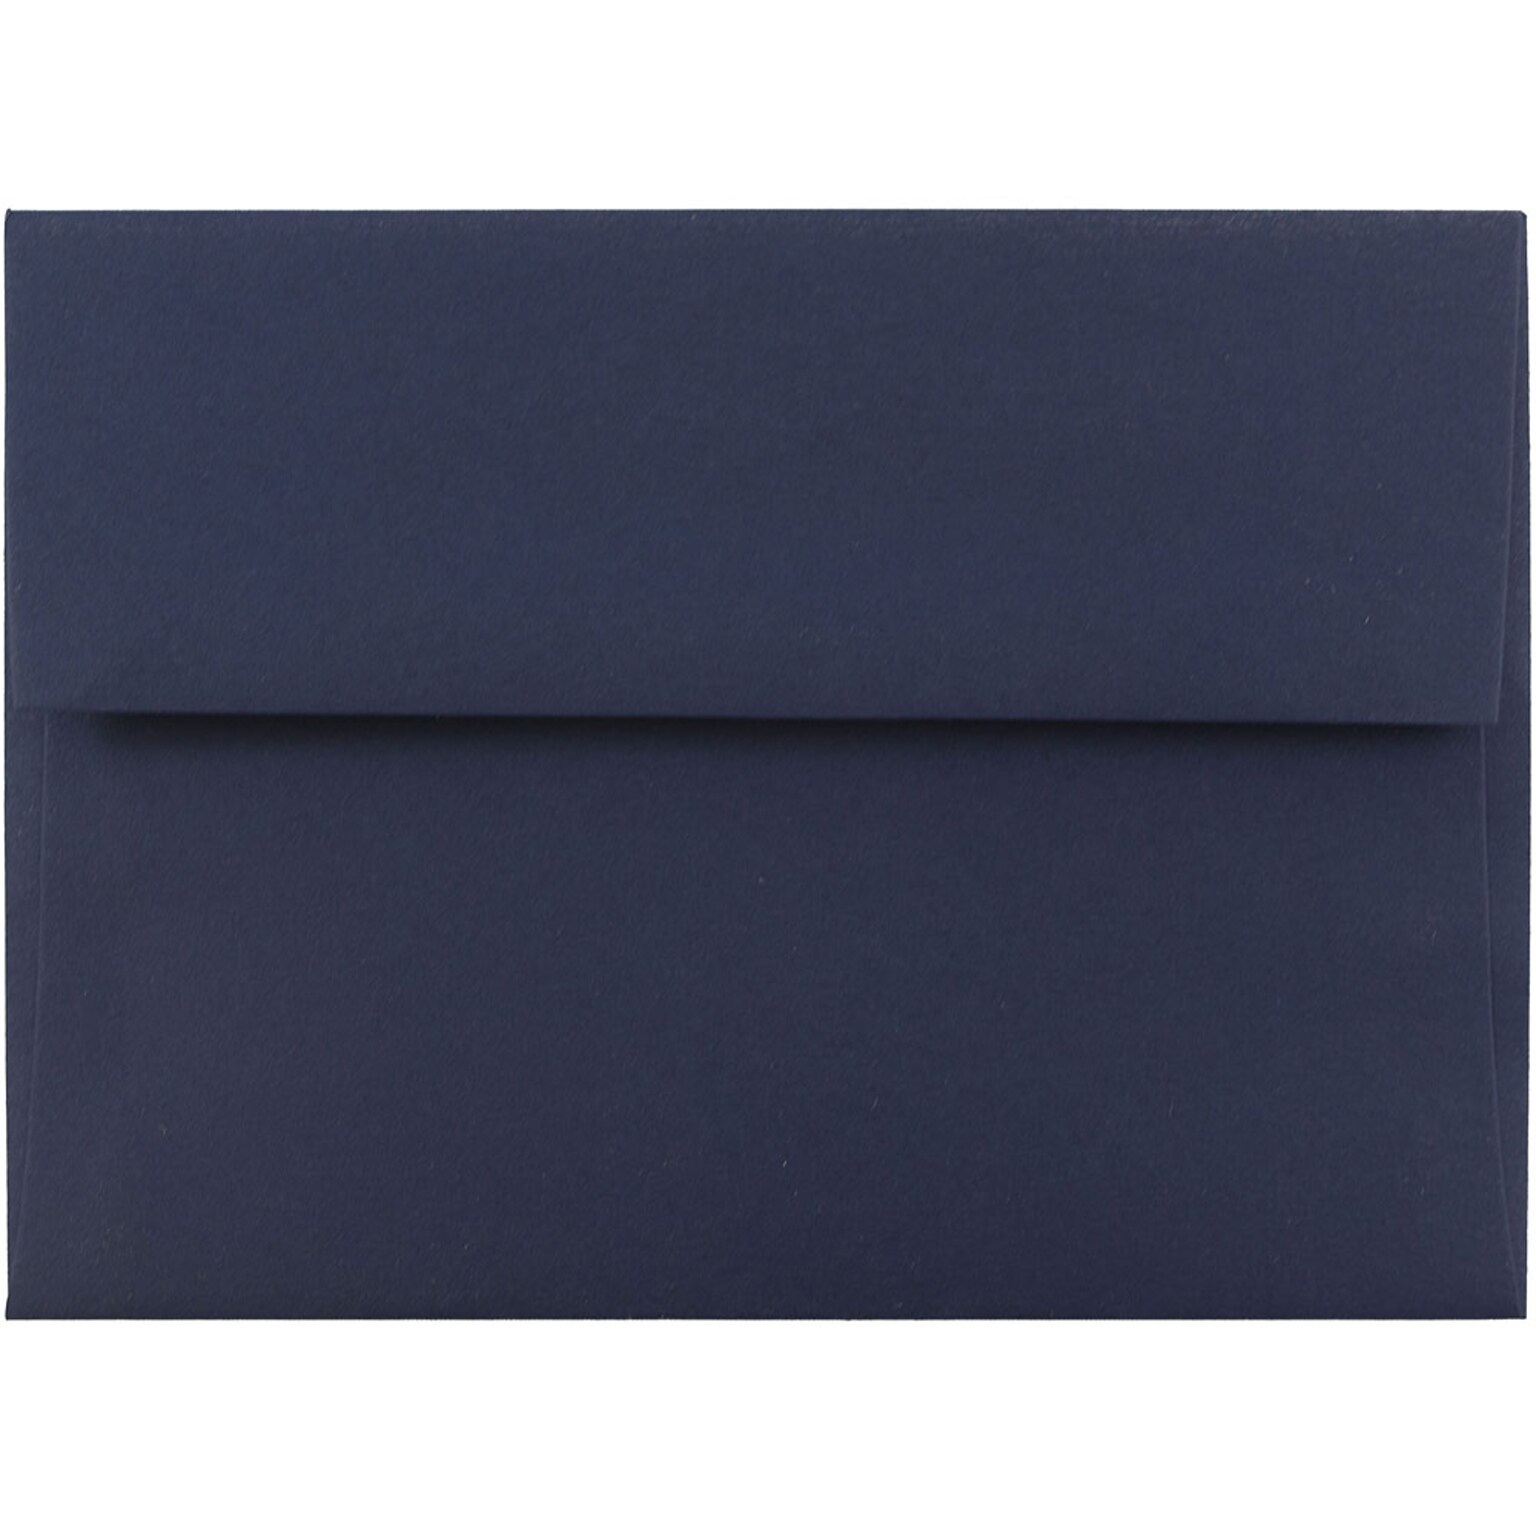 JAM Paper A6 Invitation Envelopes, 4.75 x 6.5, Navy Blue, 25/Pack (LEBA667)